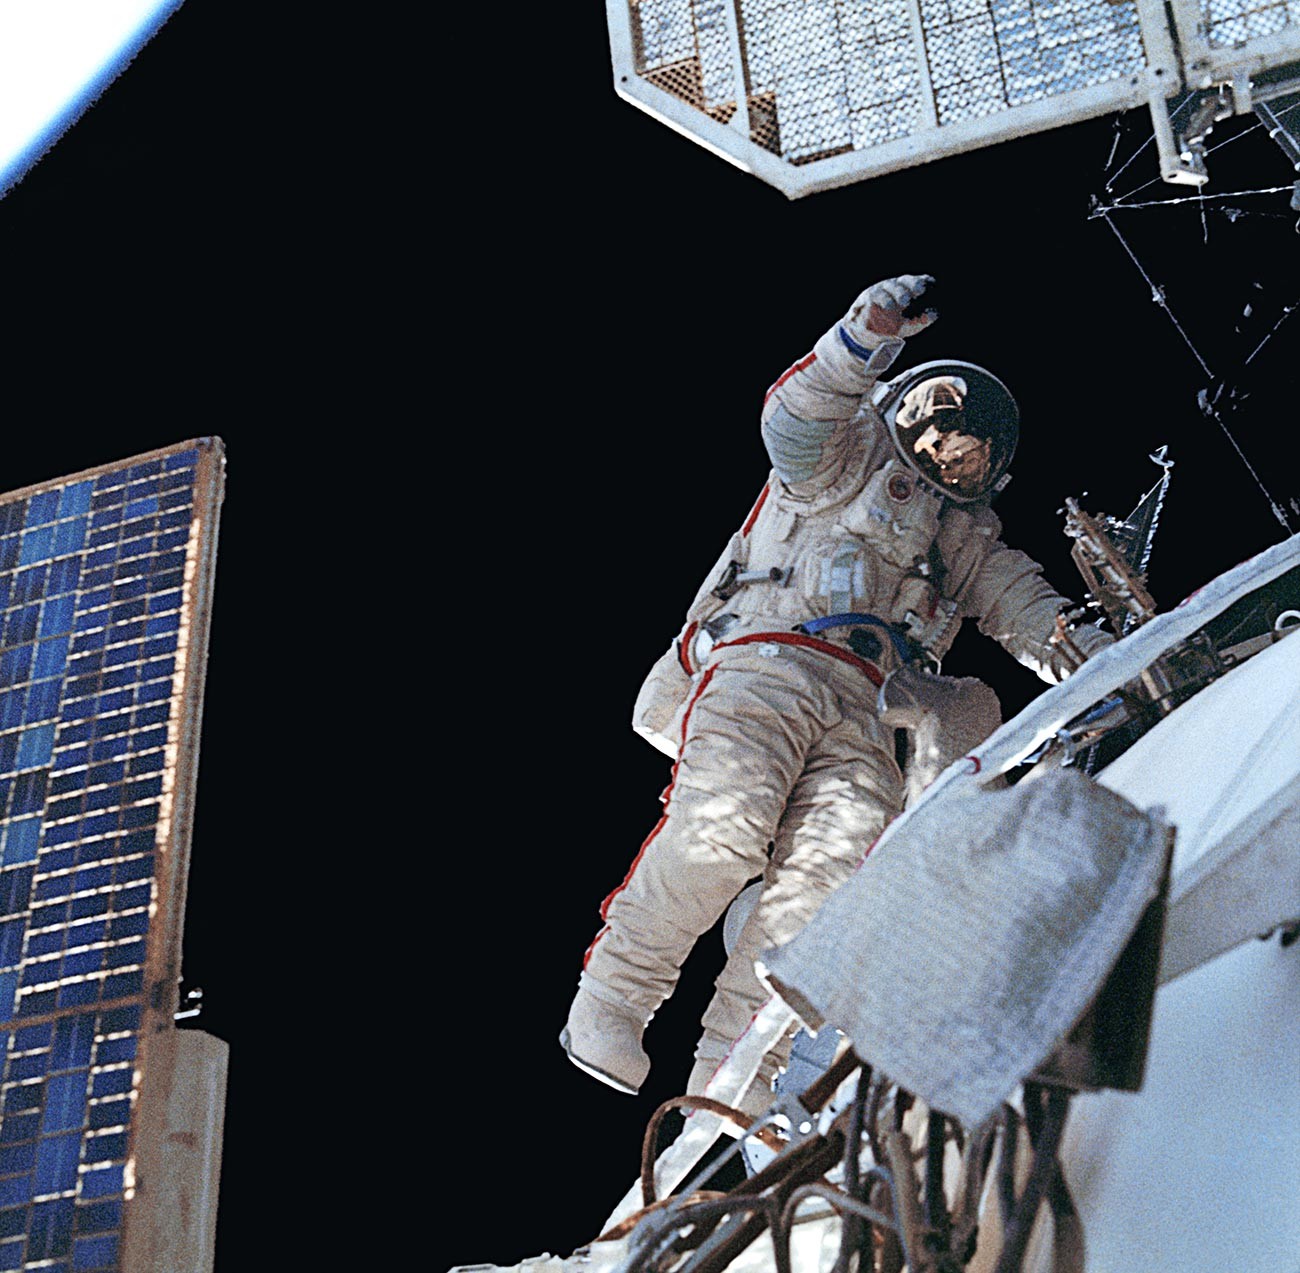 Kozmonaut Aleksandar Volkov tijekom šetnje svemirom.

